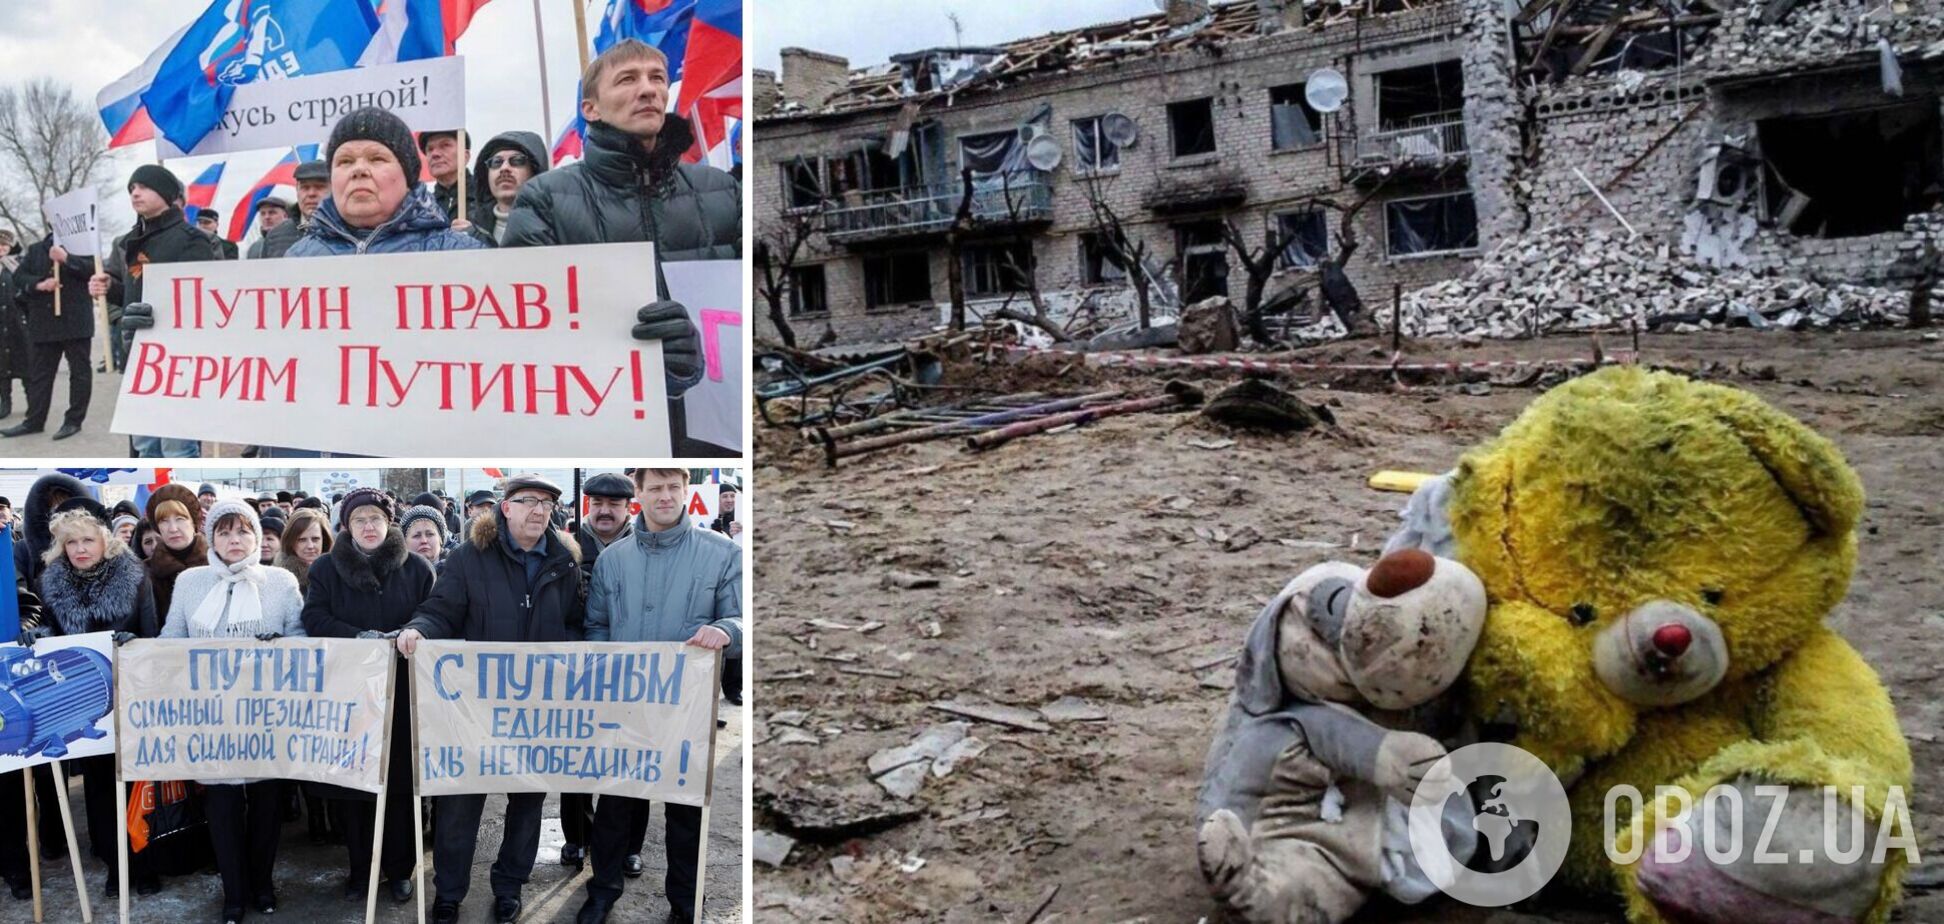 'Треба було зразу всіх розбомбити': росіяни заявили, що війна проти України 'виправдана' і 'з ними Бог'. Відео